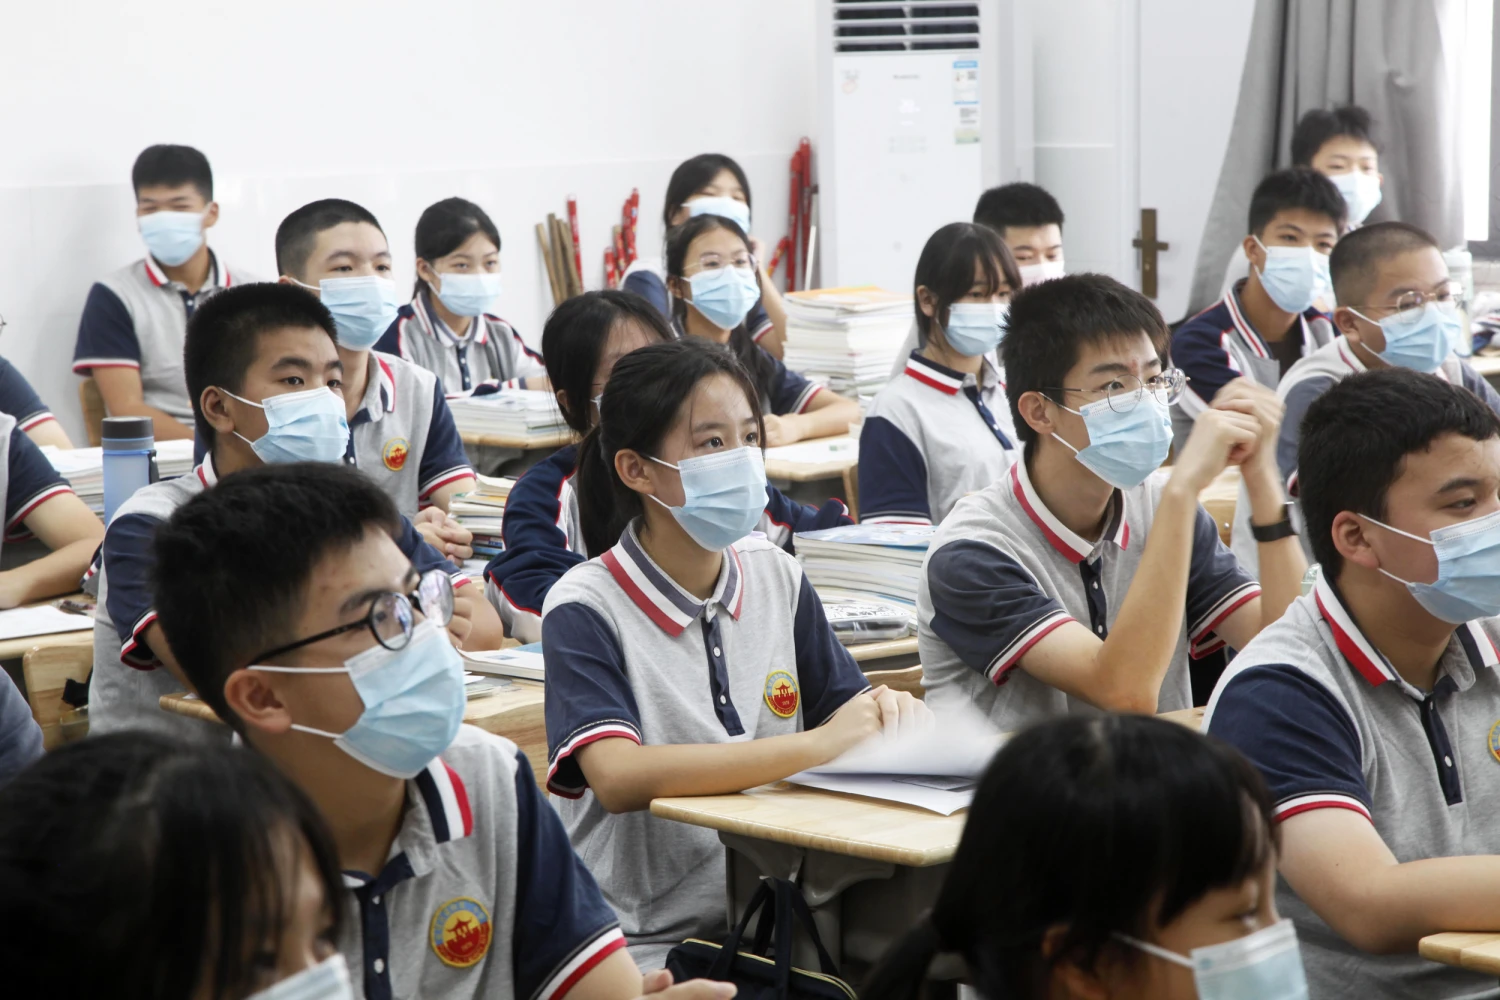 Shanghai orders schools to return online as Covid cases soar